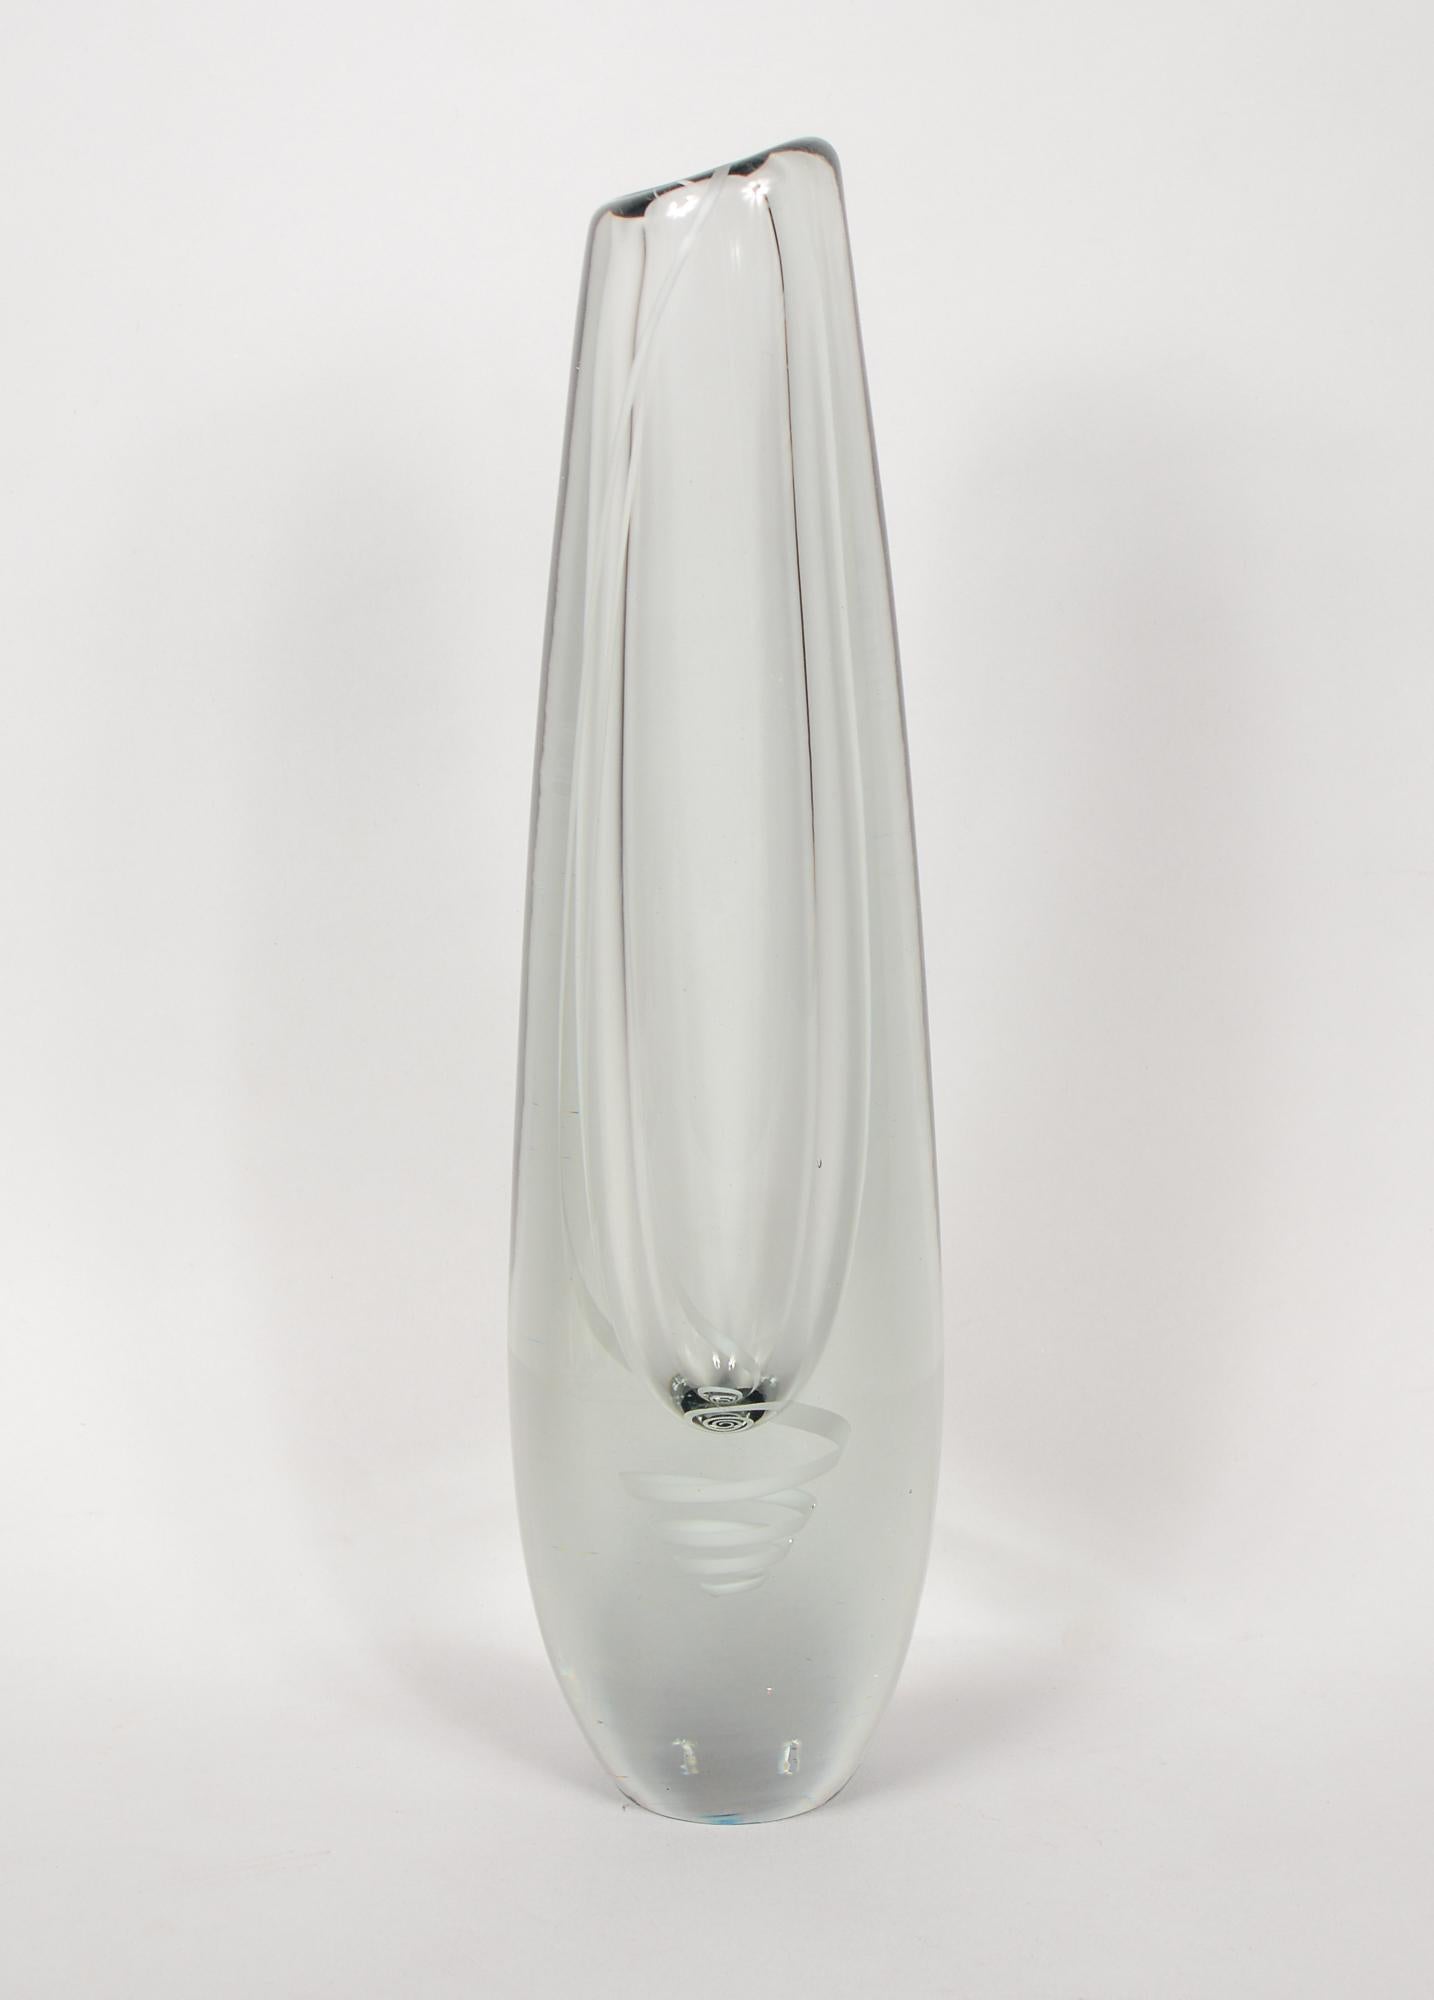 Vase Serpentini conçu par Gunnel Nyman en 1954. Le vase a été produit par Nuutajarvi Notsjo. Ce grand vase est orné d'un ruban blanc qui descend du rebord et devient une spirale allongée sous la cavité du vase. Signé en bas de page. Il y a quelques